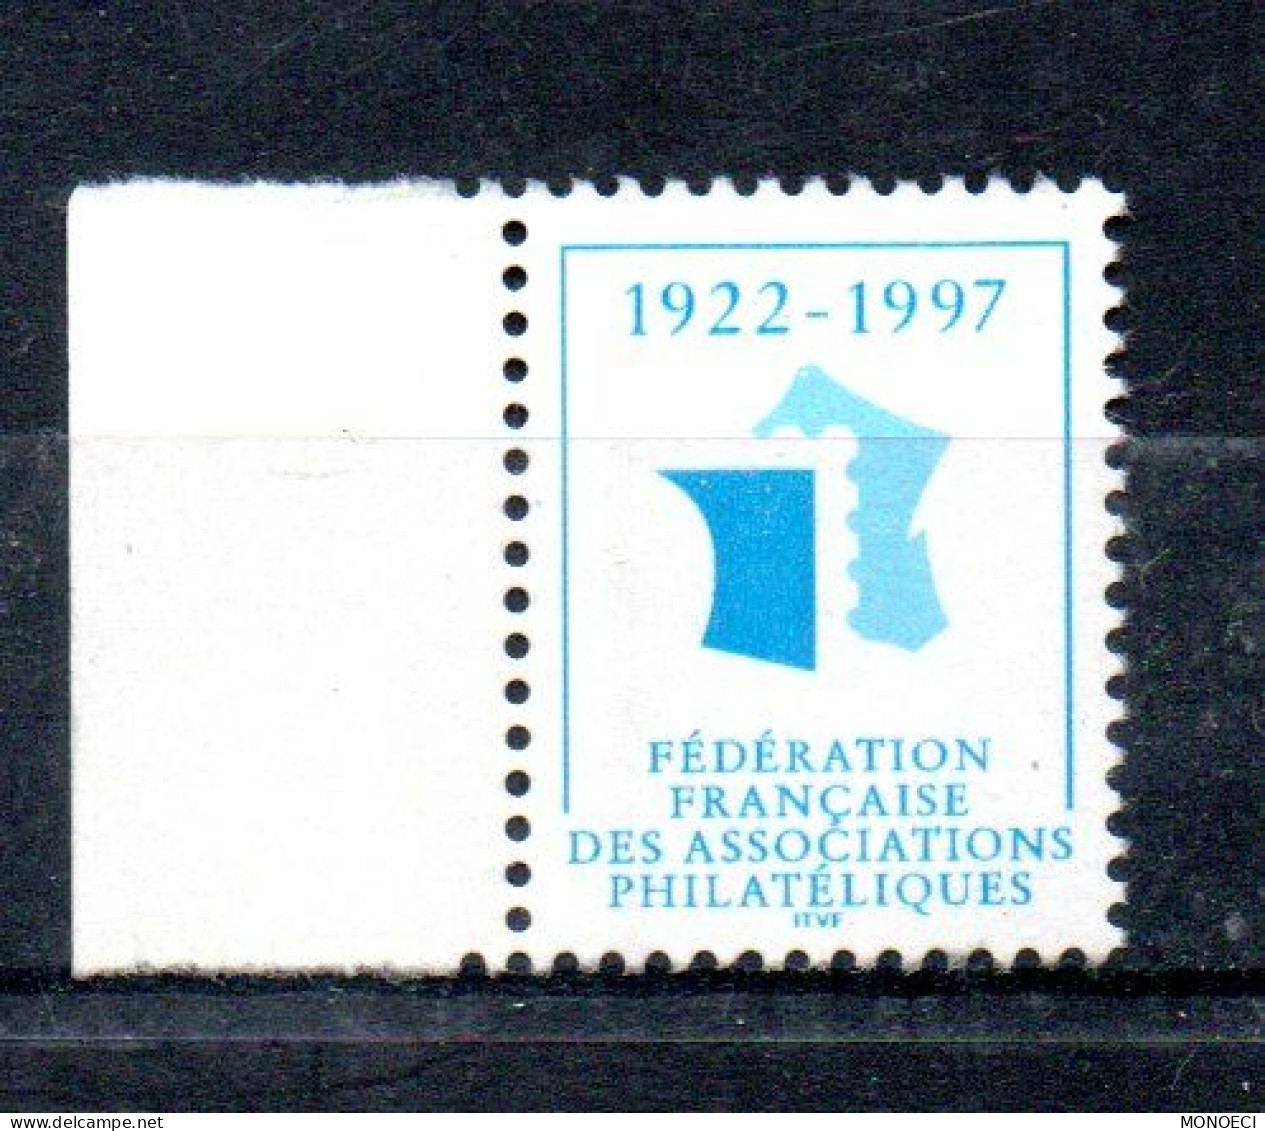 FRANCE -- ERRINOPHILIE -- Vignette, Cinderella -- Fédération Française Des Associations Philatéliques 1922 - 1997 - Briefmarkenmessen